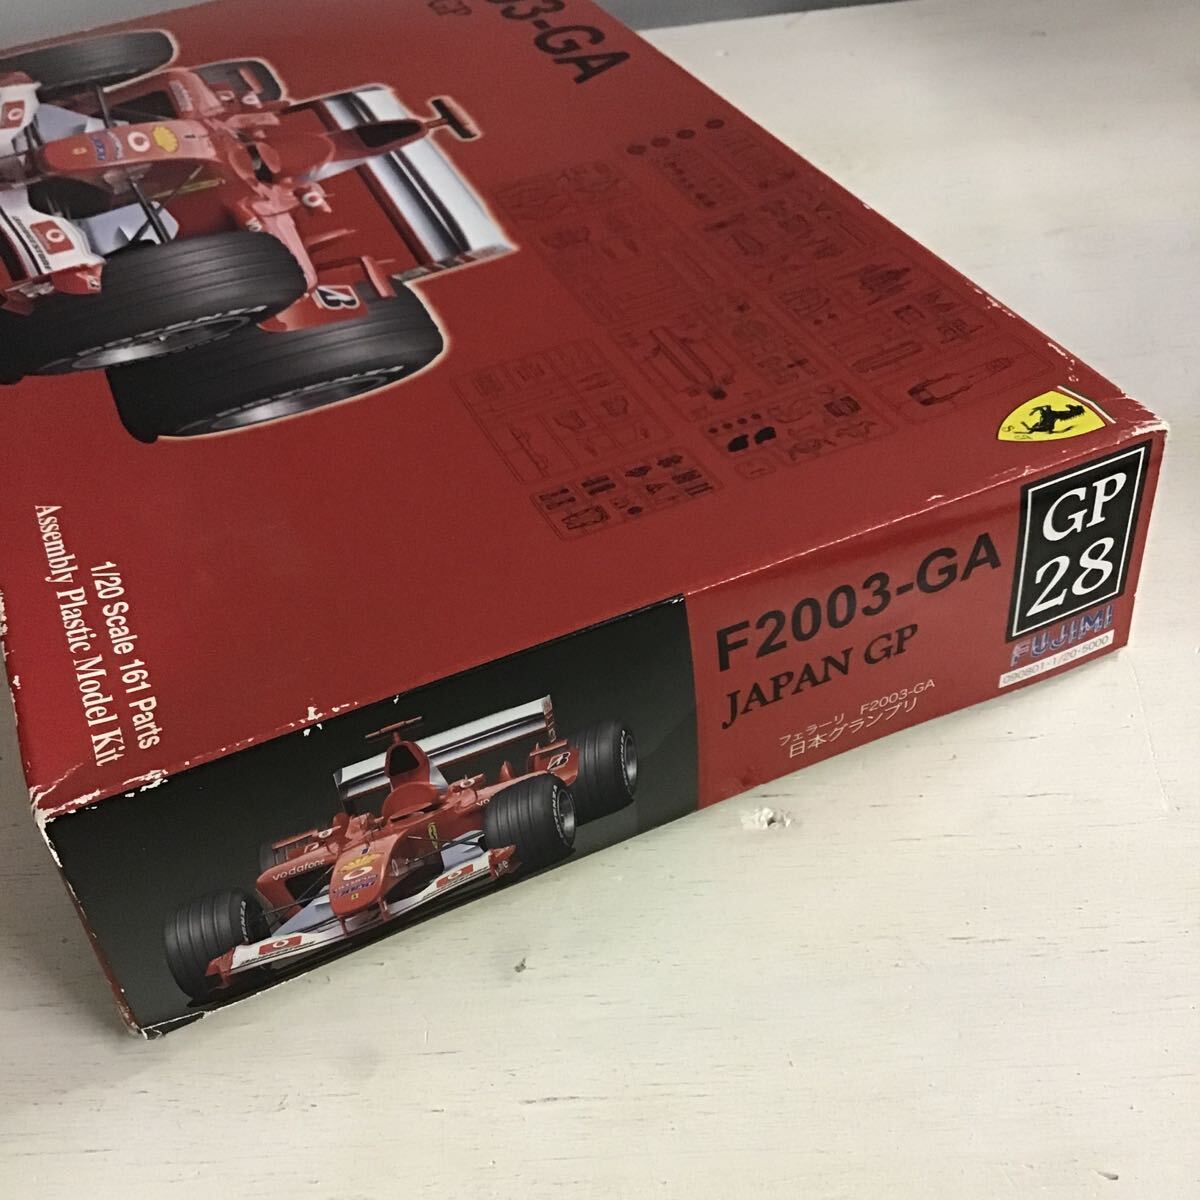 42【未組立】フジミ GP28 F2003-GA JAPAN GP Ferrari フェラーリ 日本グランプリ (80)_画像2